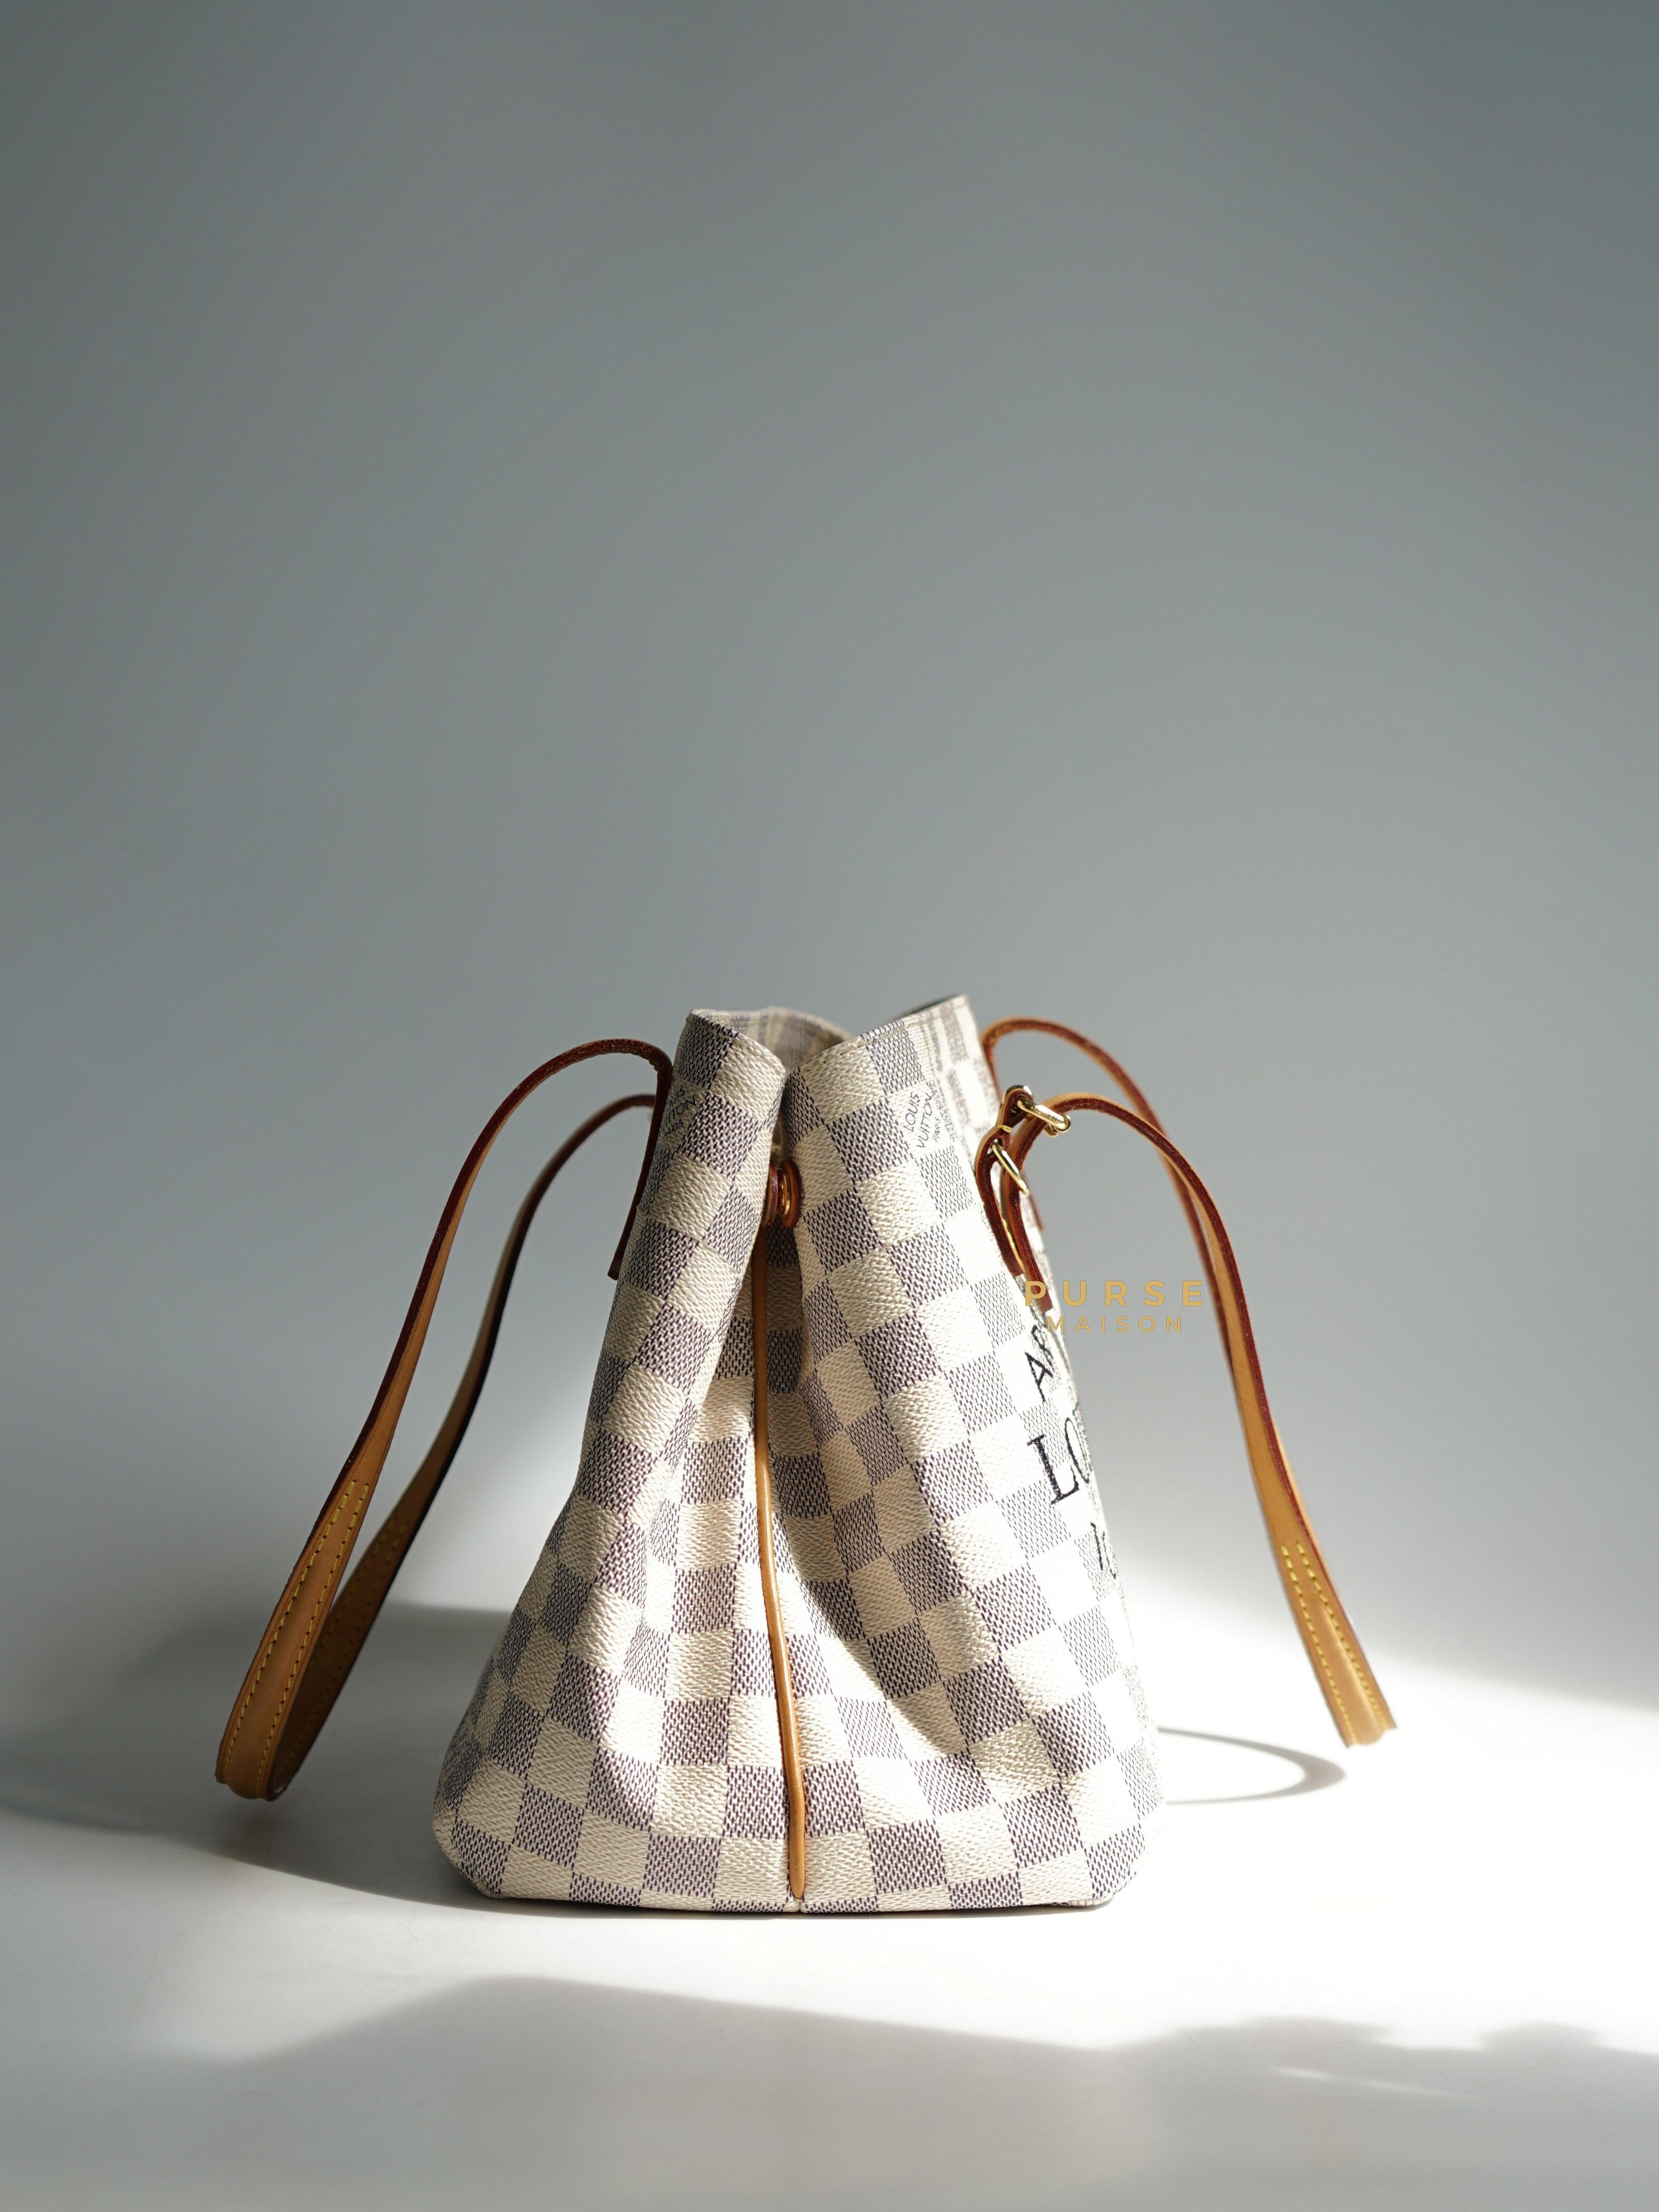 Louis Vuitton Cabas Adventure PM in Damier Azure Canvas (Date code: DU1194) | Purse Maison Luxury Bags Shop